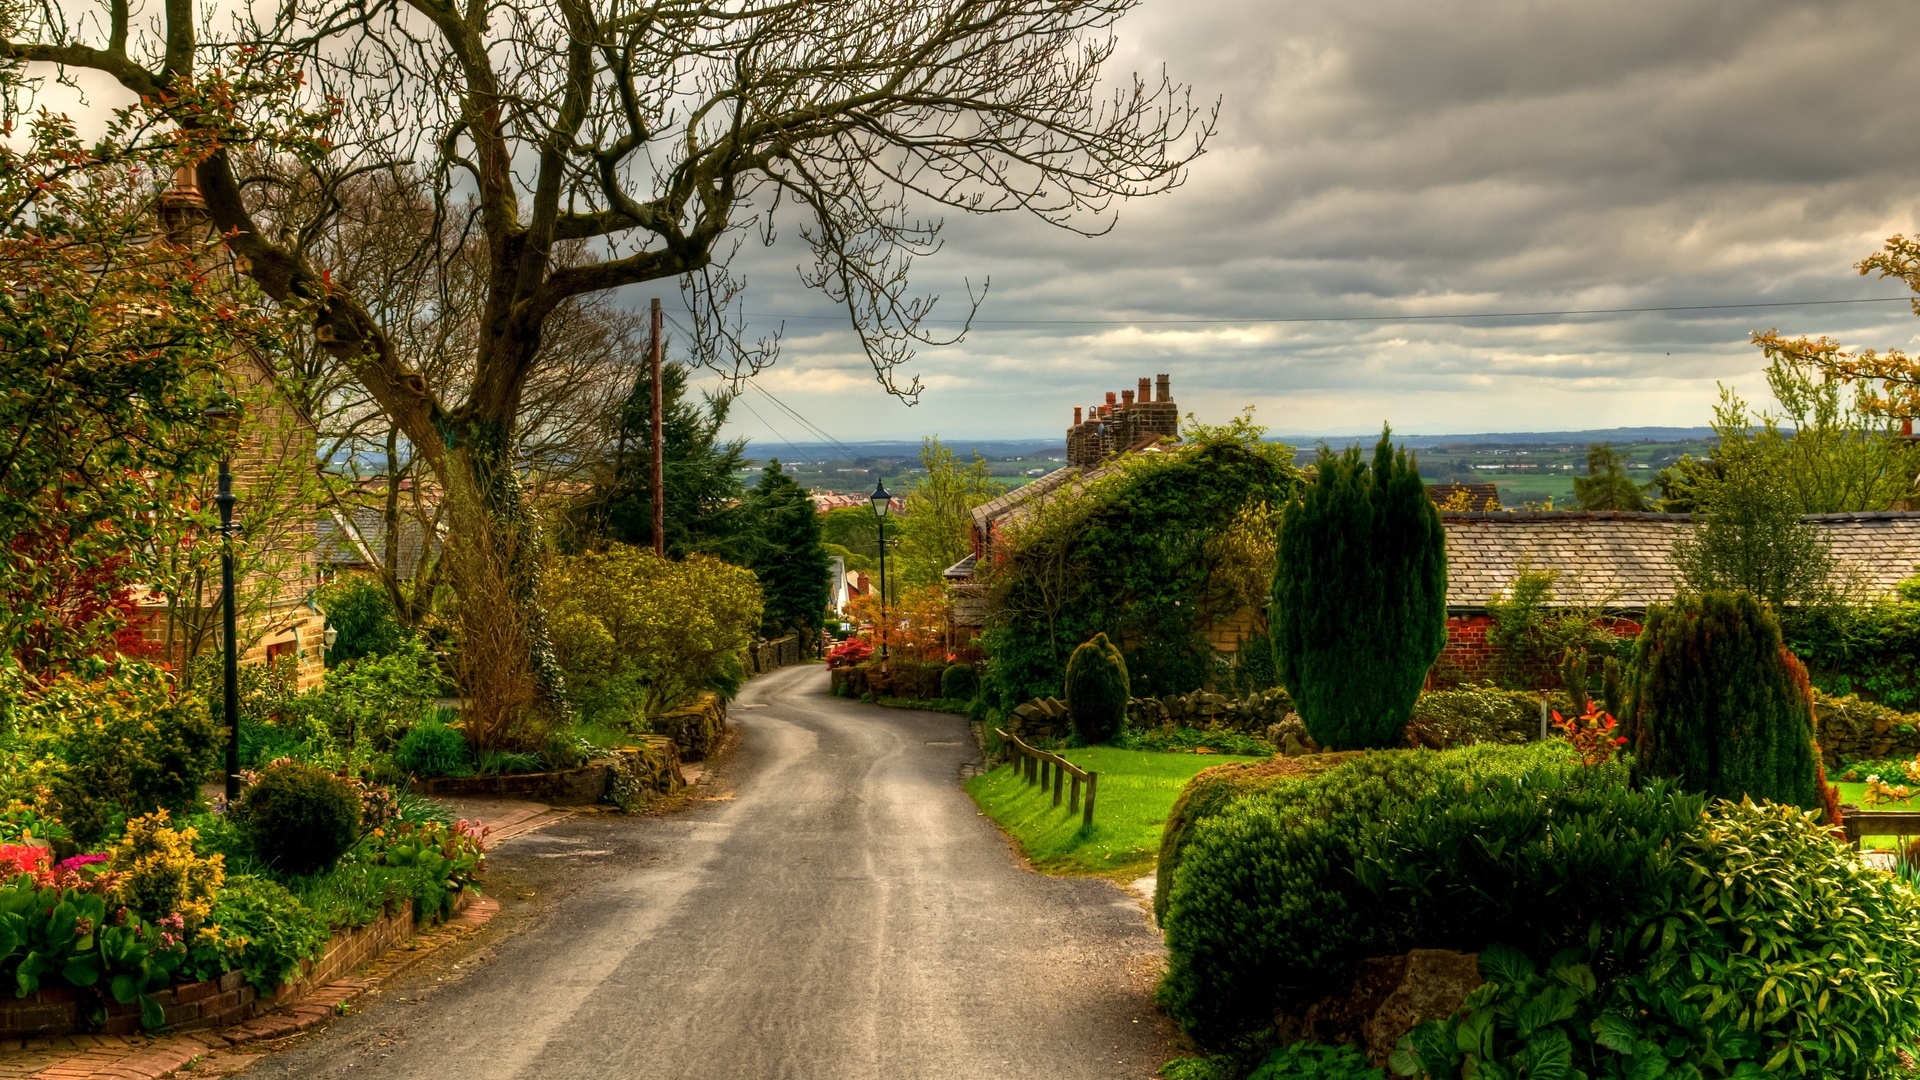 英国最美乡村 - 科茨沃尔德 | Cotswolds_村庄